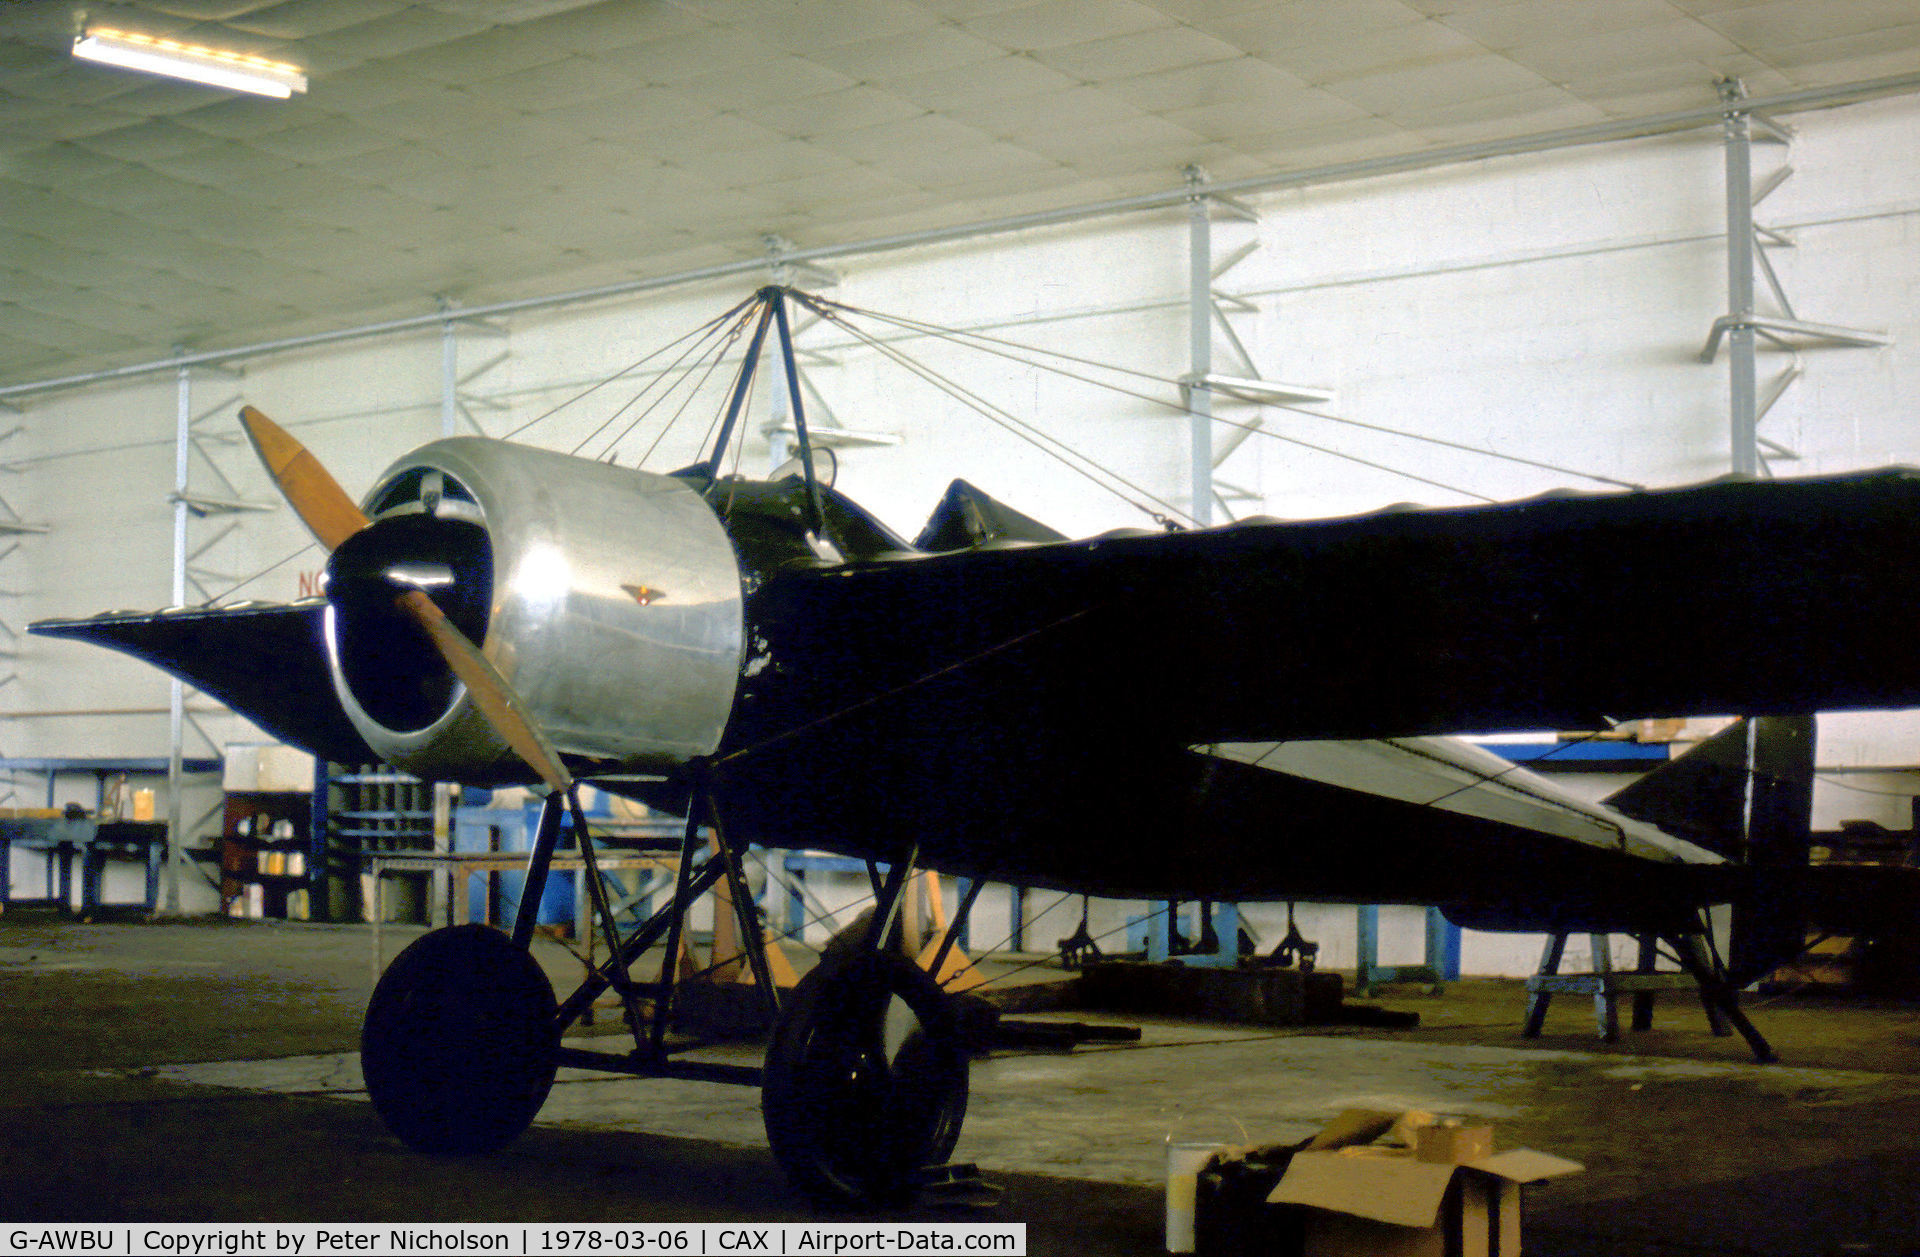 G-AWBU, 1970 Morane-Saulnier N Bullet Replica C/N PPS/REP/7, Morane Saulnier Type N replica as seen at Carlisle in the Spring of 1978.